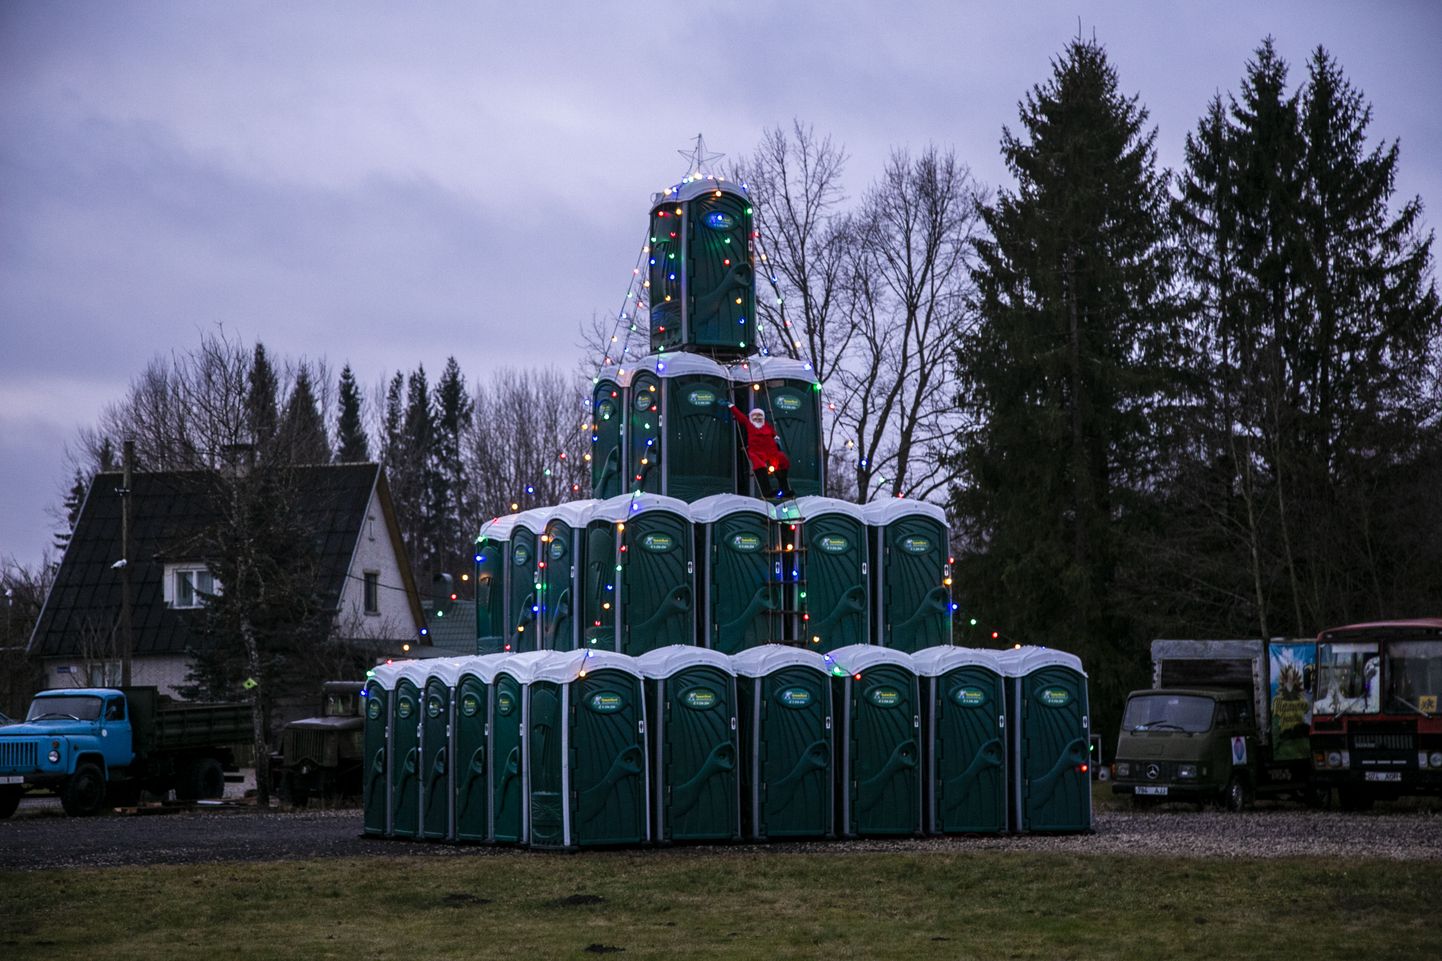 Häda ei anna häbeneda! Tartu poolt Võrru sissesõidul loob eripärast jõulumeeleolu välikäimlatest kuusepuu.